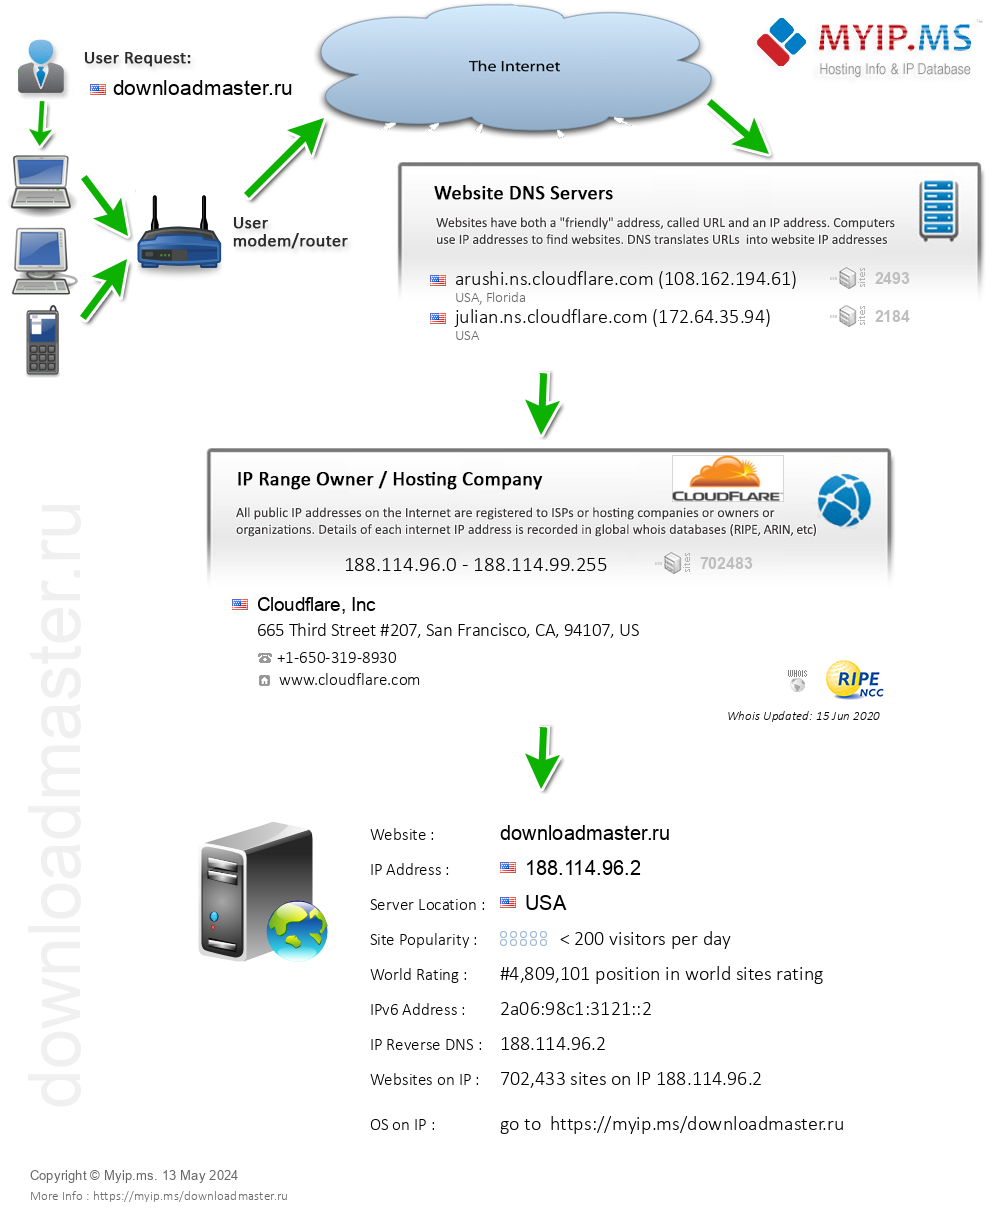 Downloadmaster.ru - Website Hosting Visual IP Diagram